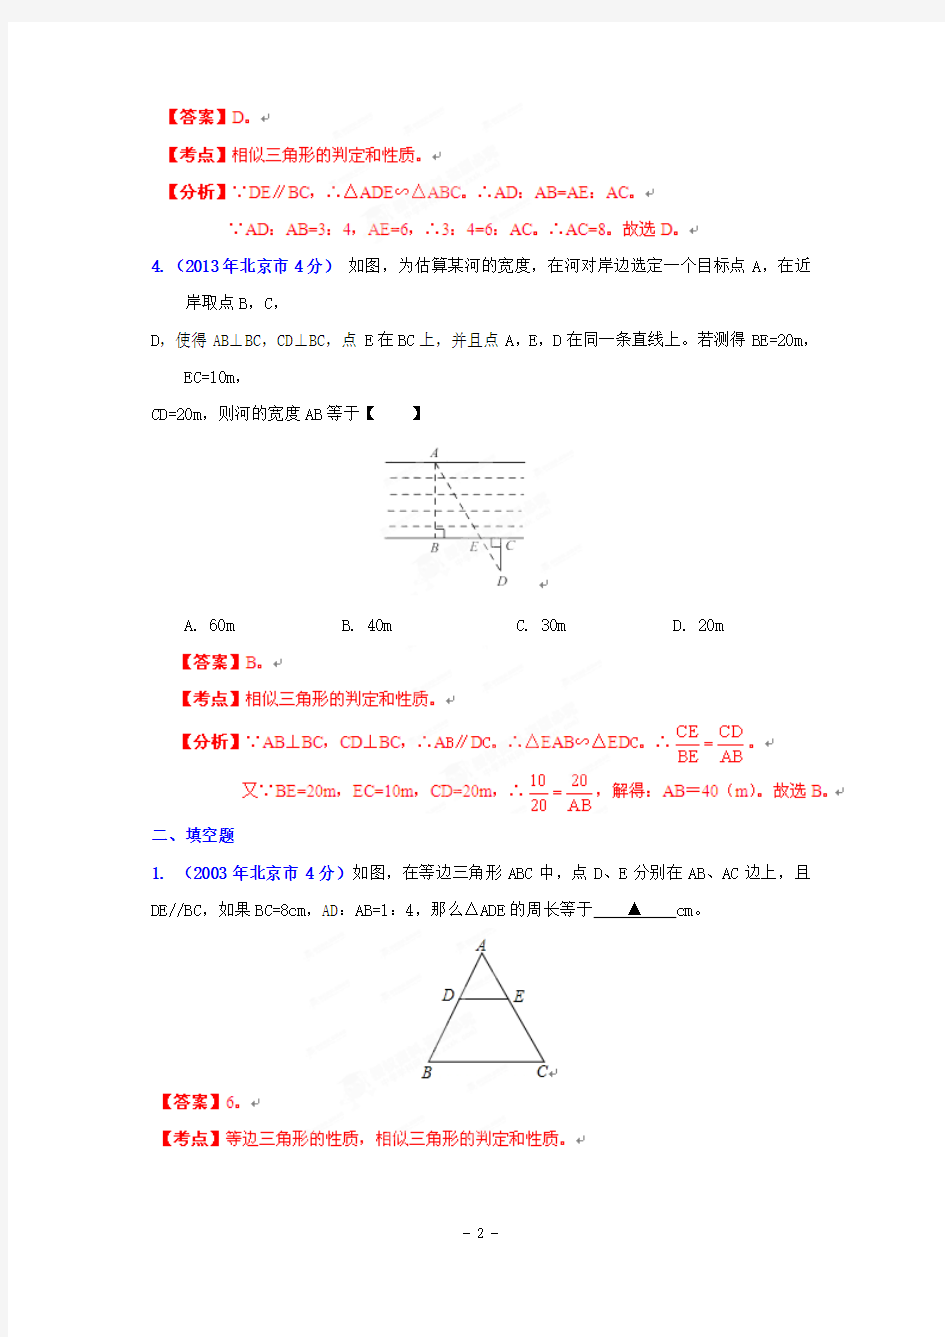 2002-2013年北京市中考数学试题分类汇编(12专题) 专题9：三角形